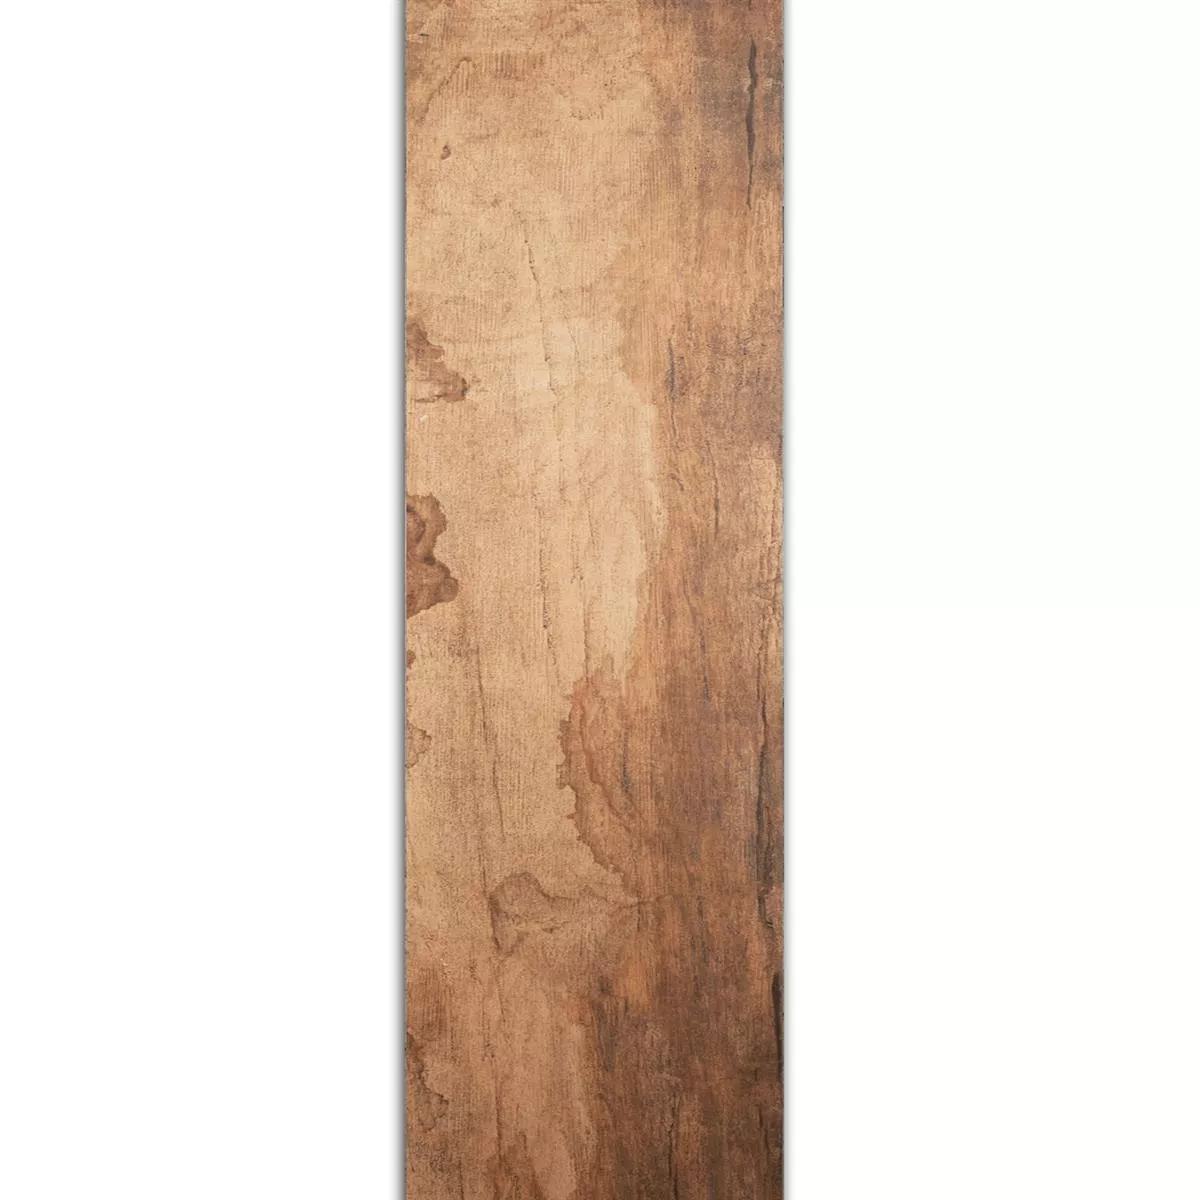 Próbka Płytki Podłogowe Wygląd Drewna Global Jasnobrązowy 20x180cm